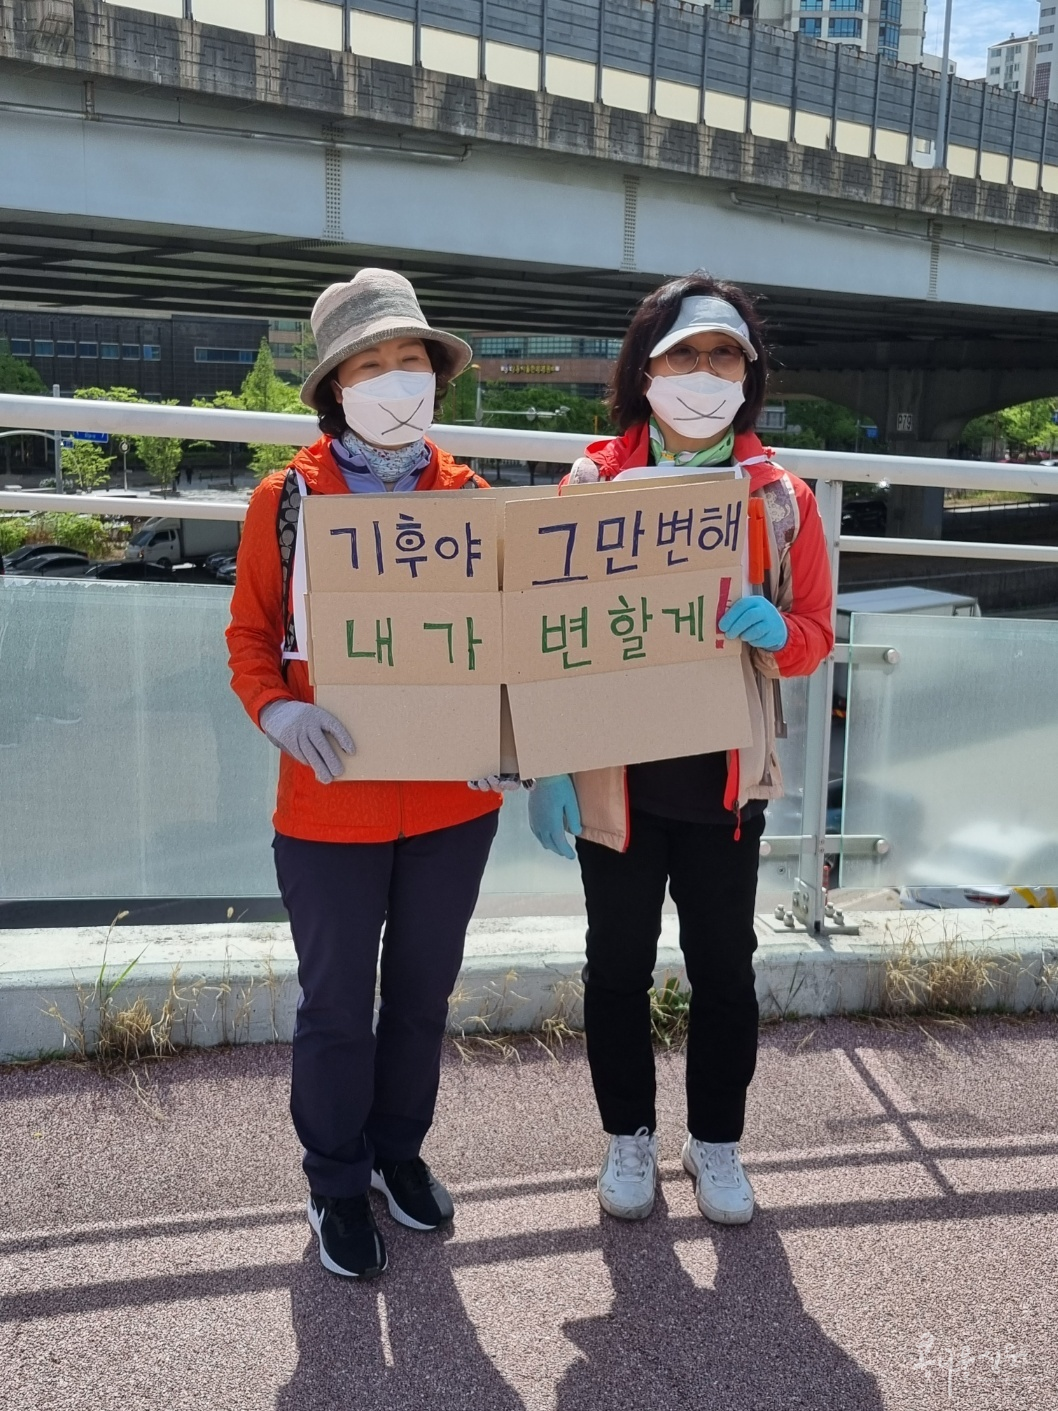 (사)소비자기후행동과 부천지역시민단체 회원들은 4월 22일 ‘지구의 날’을 날을 맞아 중앙공원에서 상동호수공원까지 행진하며 캠페인을 벌였다. 